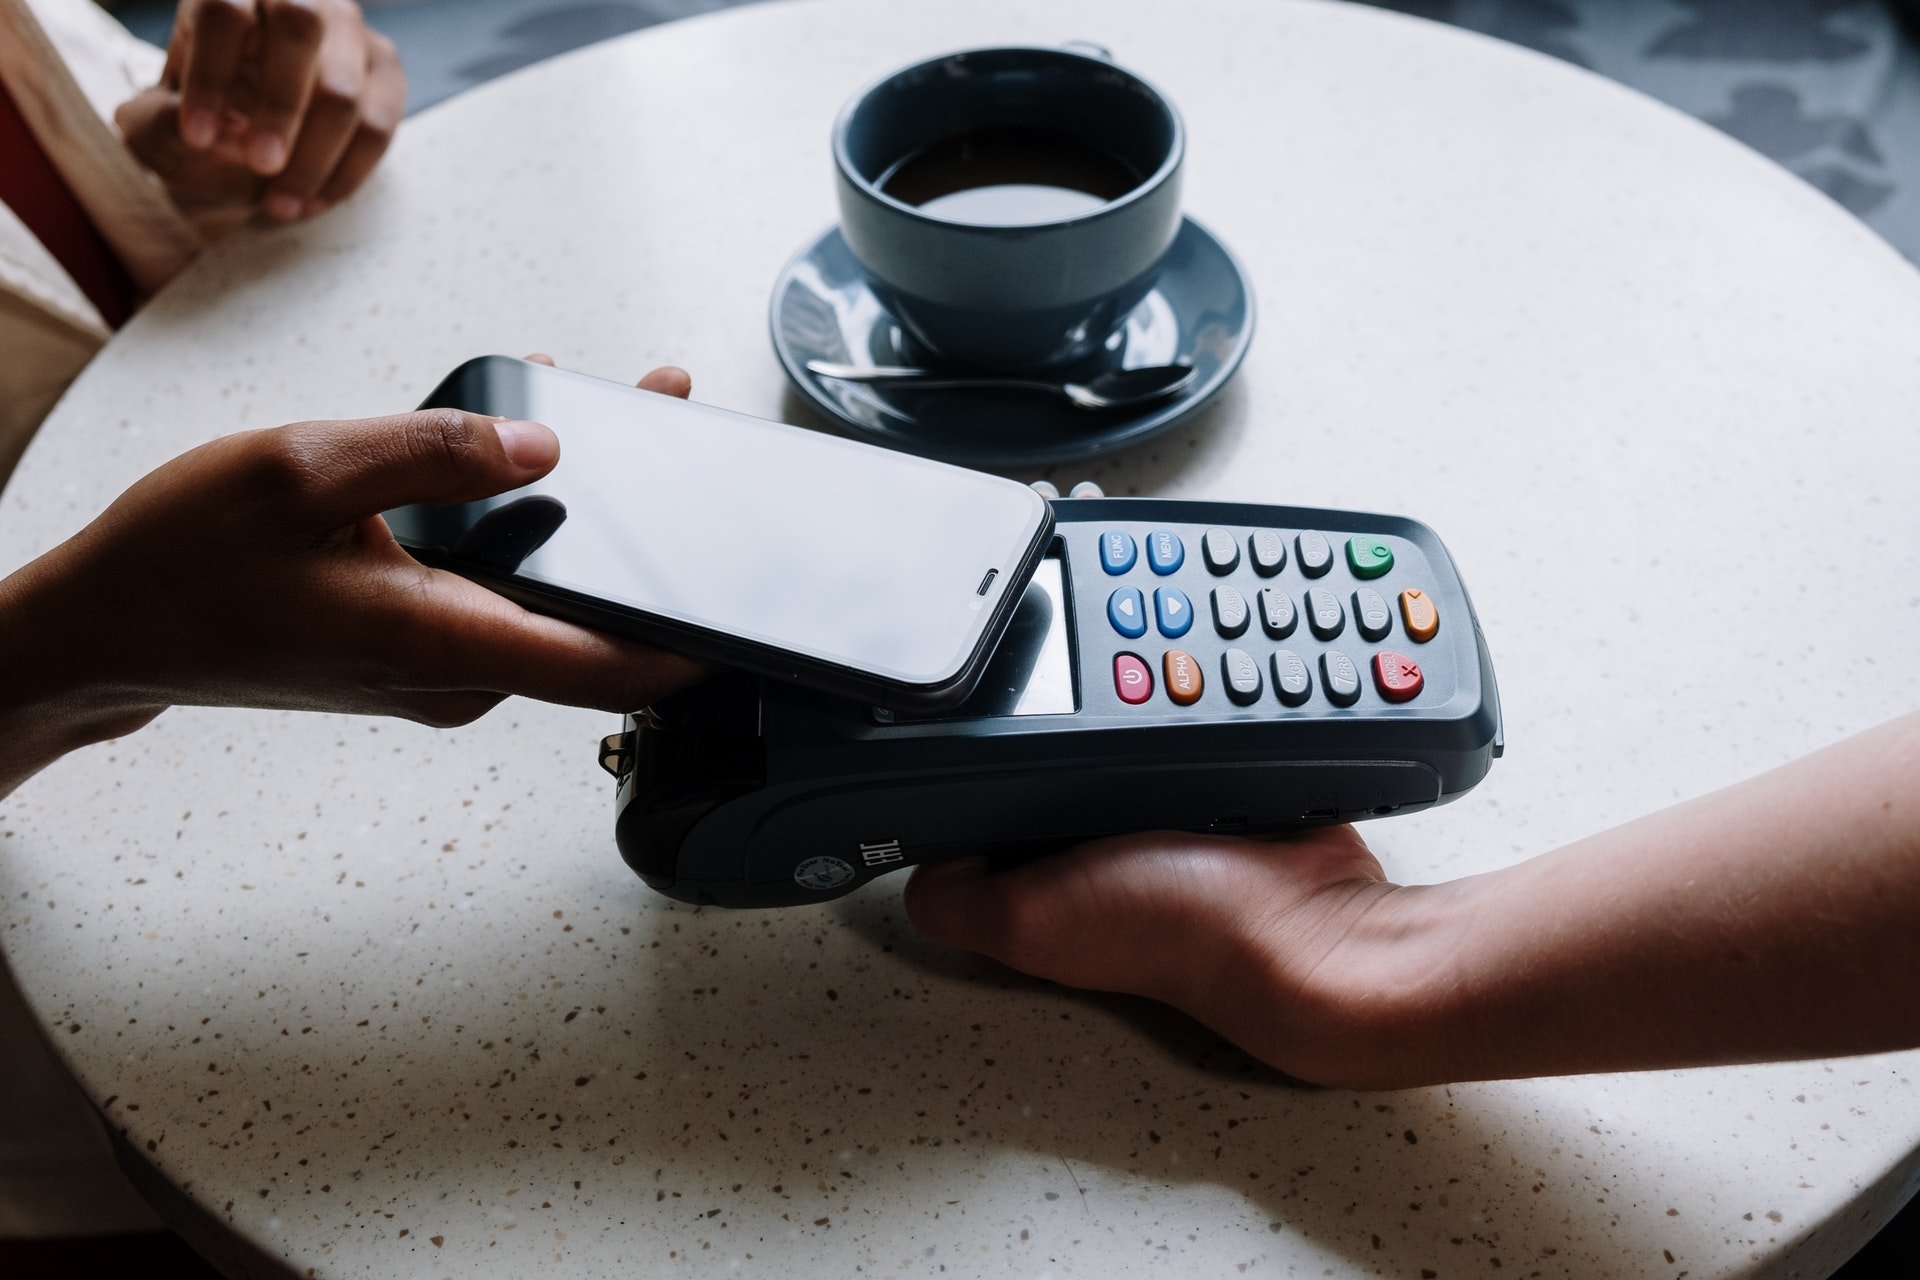 Pagamentos por meio de NFC podem ser encontrados em aplicativos como Google Pay e Apple Pay. (Fonte: Pexels)